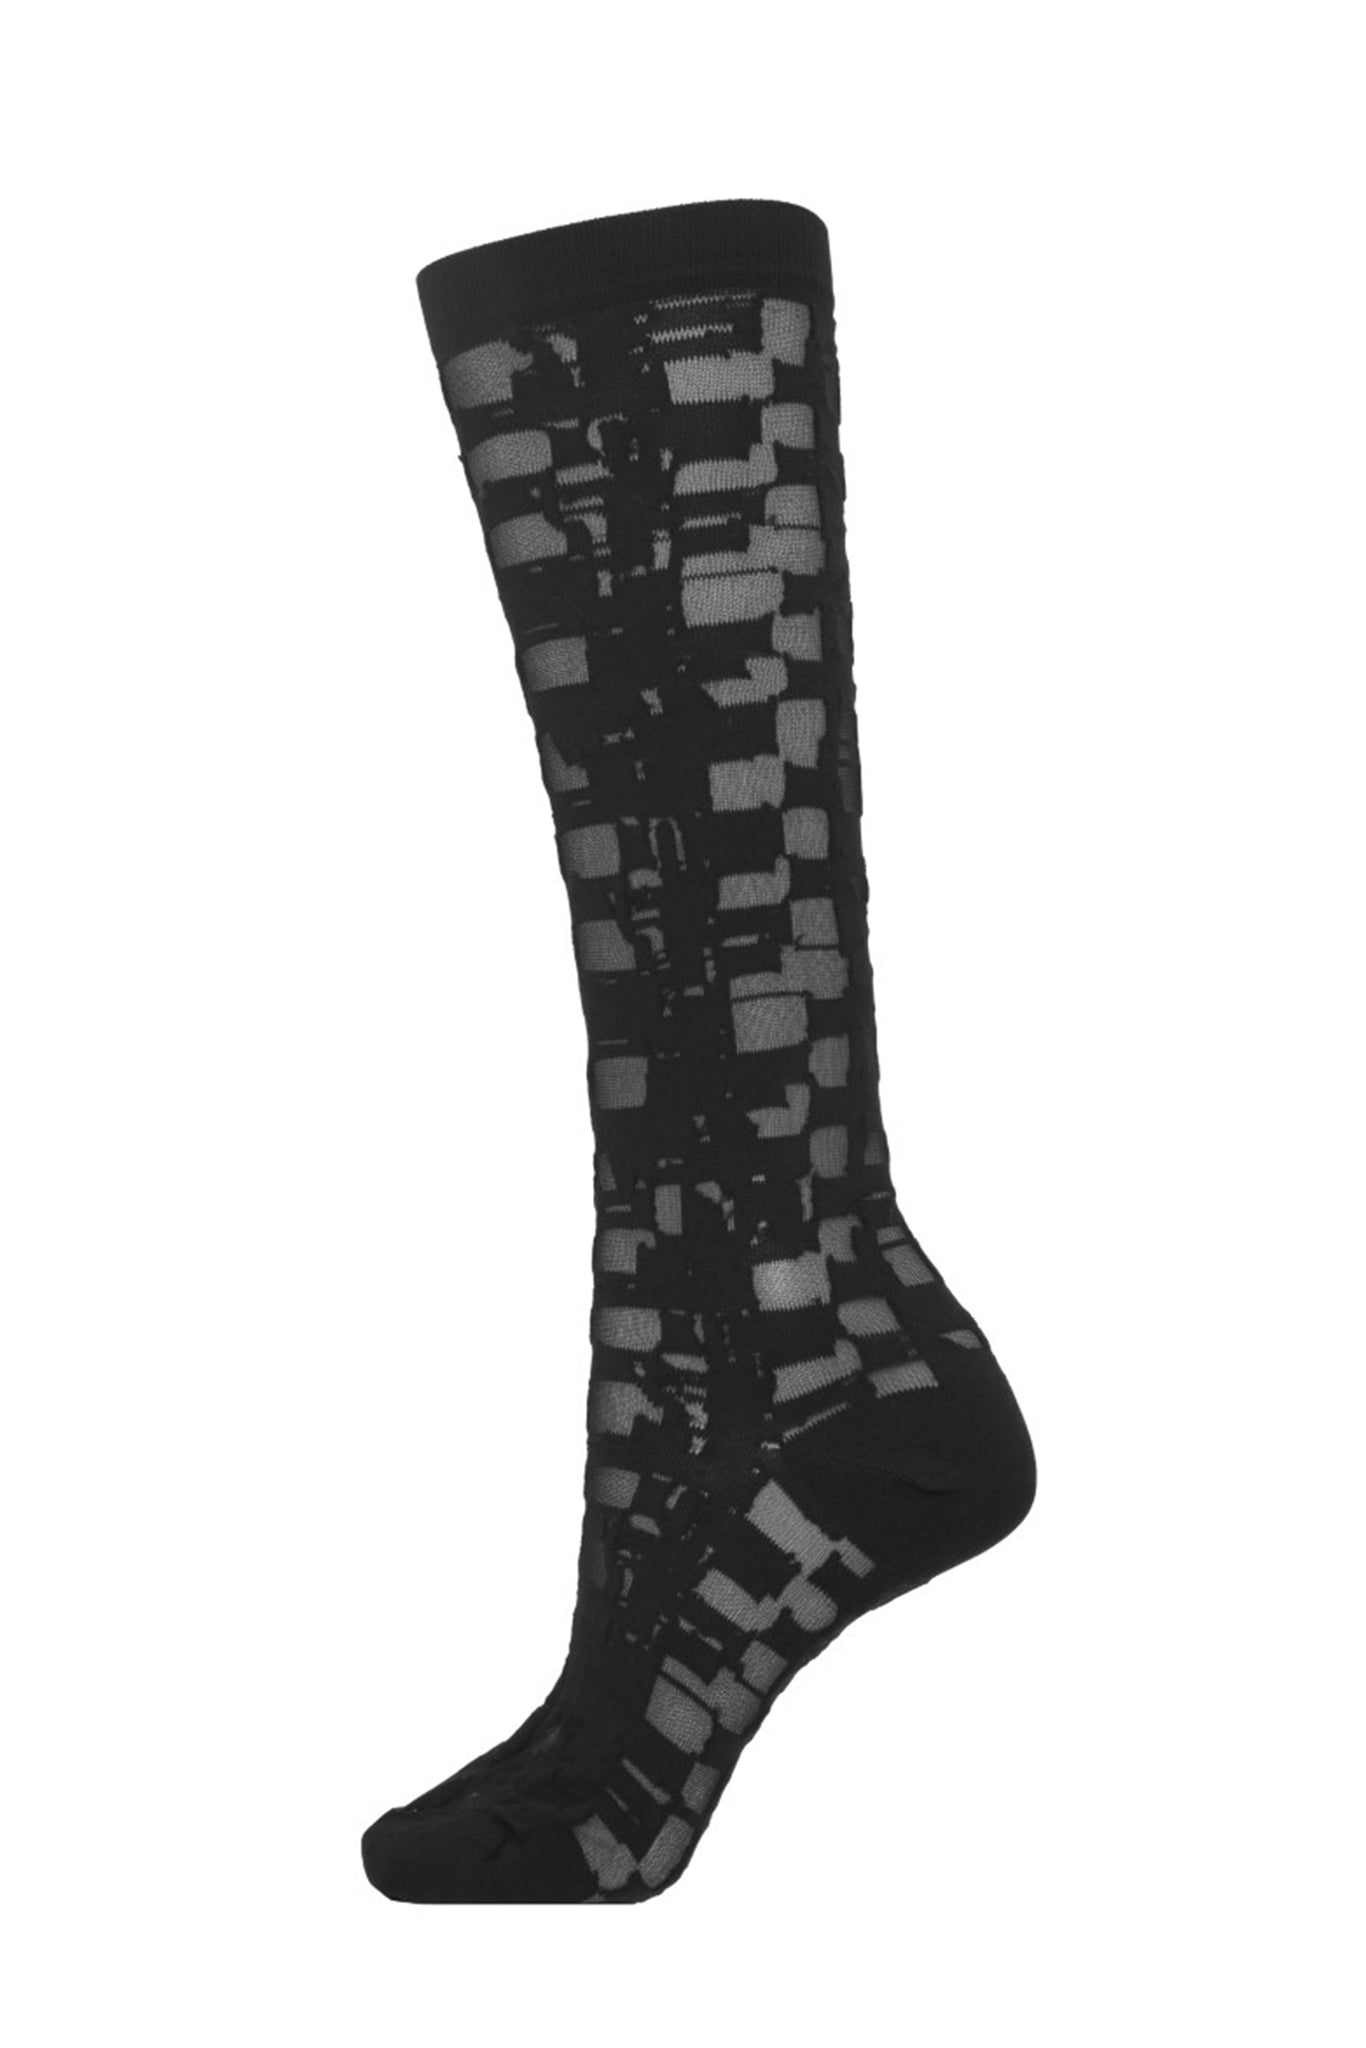 Unboxing Socks Femme	| Transparent Black